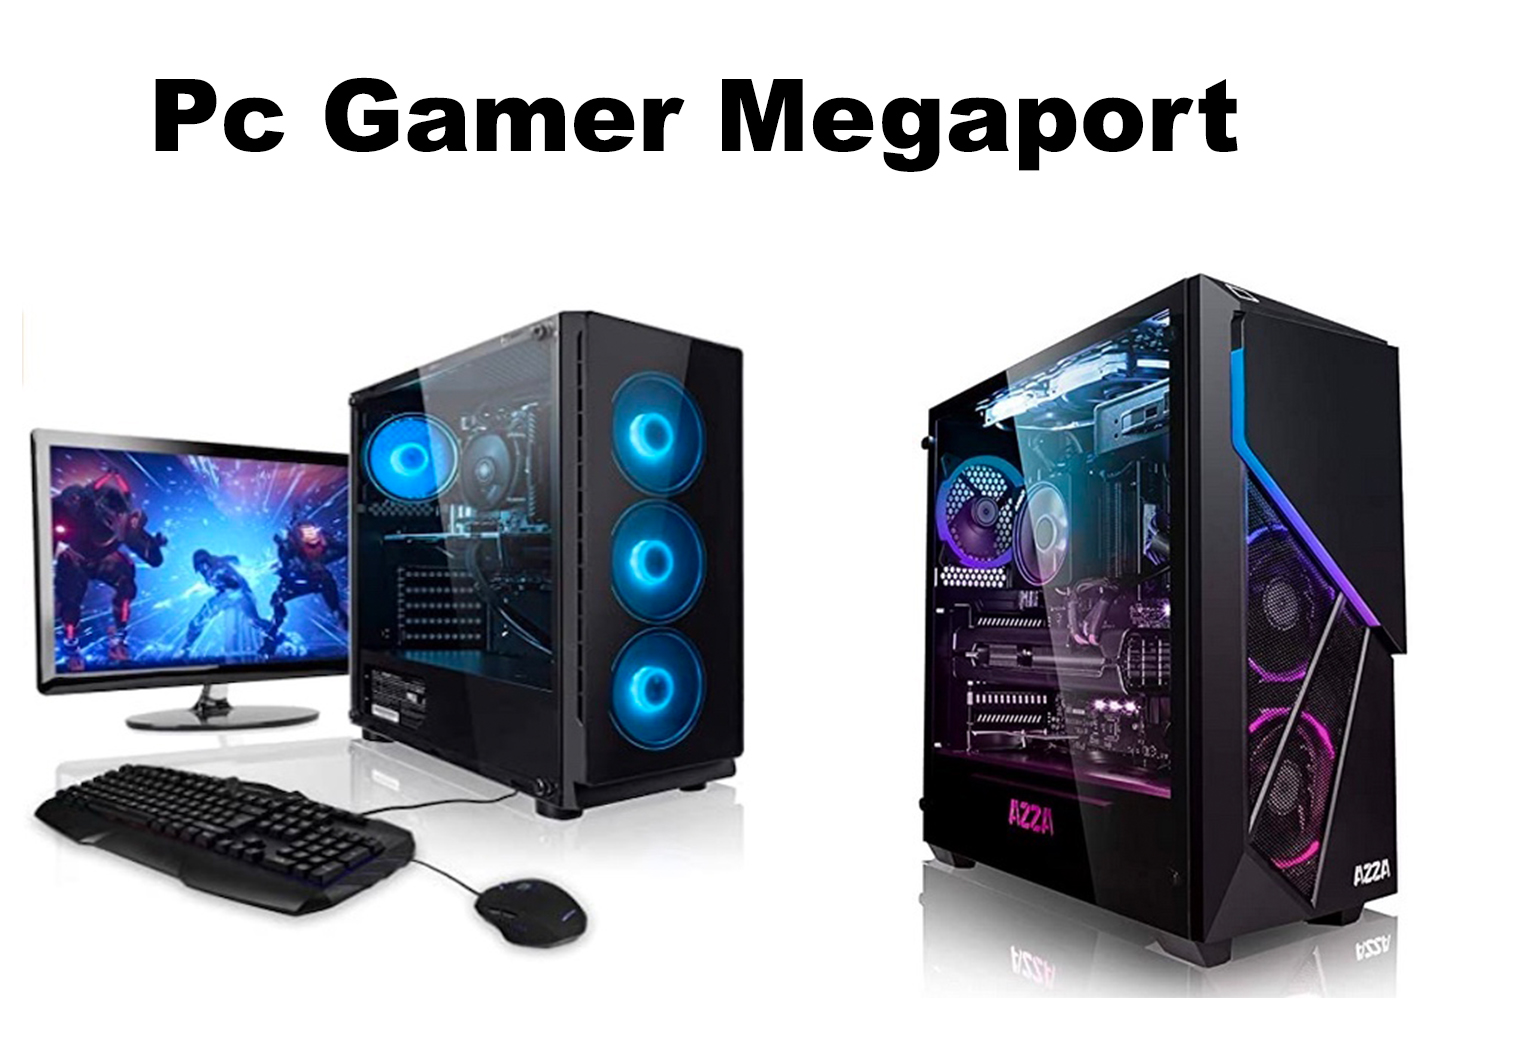 Faut-il acheter un PC Gamer Megaport ? Notre avis et les promotions